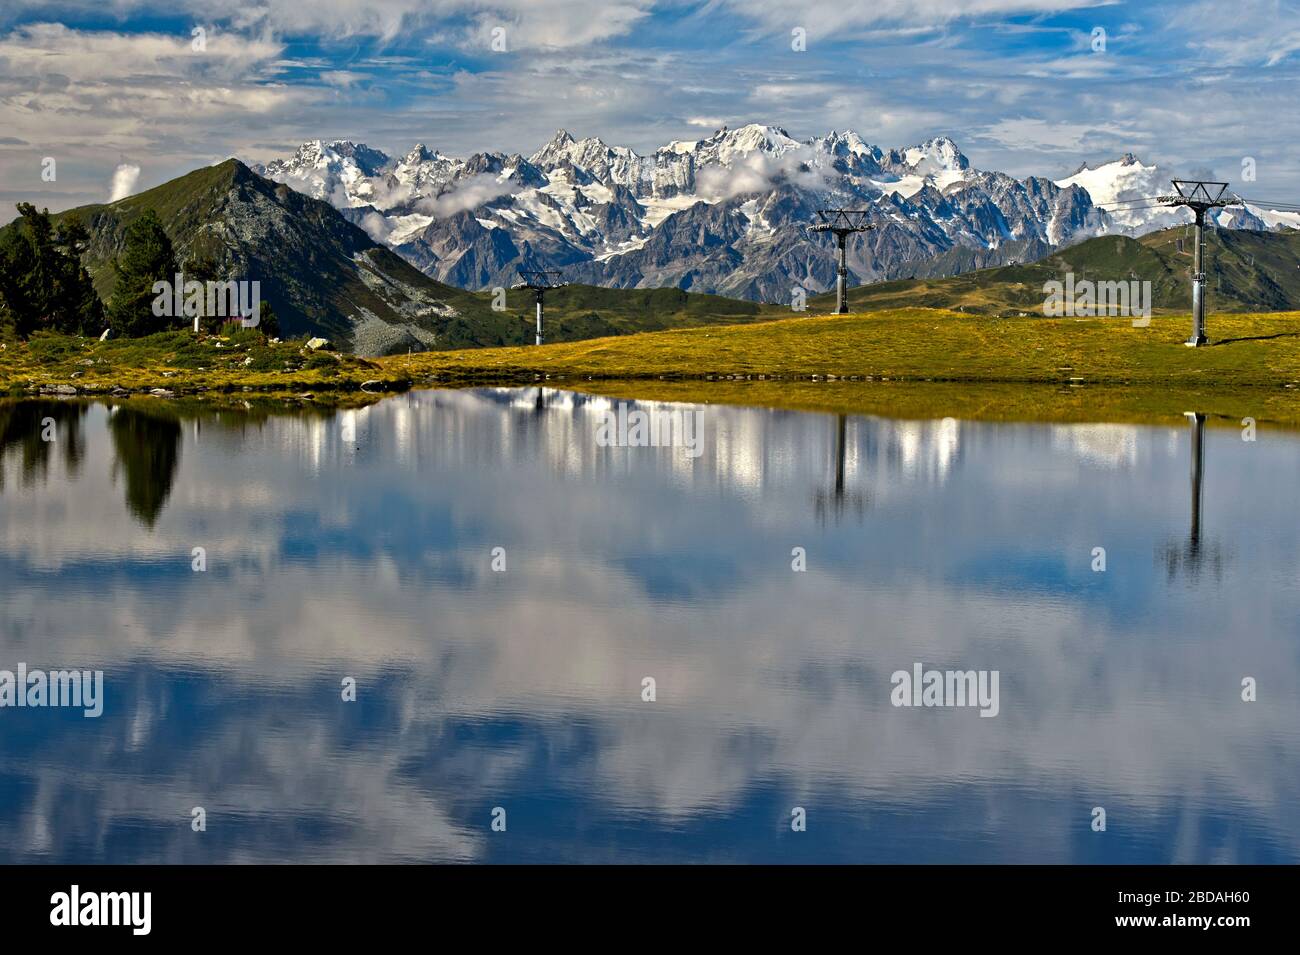 Lago de montaña Lac de Tracouet frente a los Alpes Peninos, Nendaz, Valais, Suiza Foto de stock